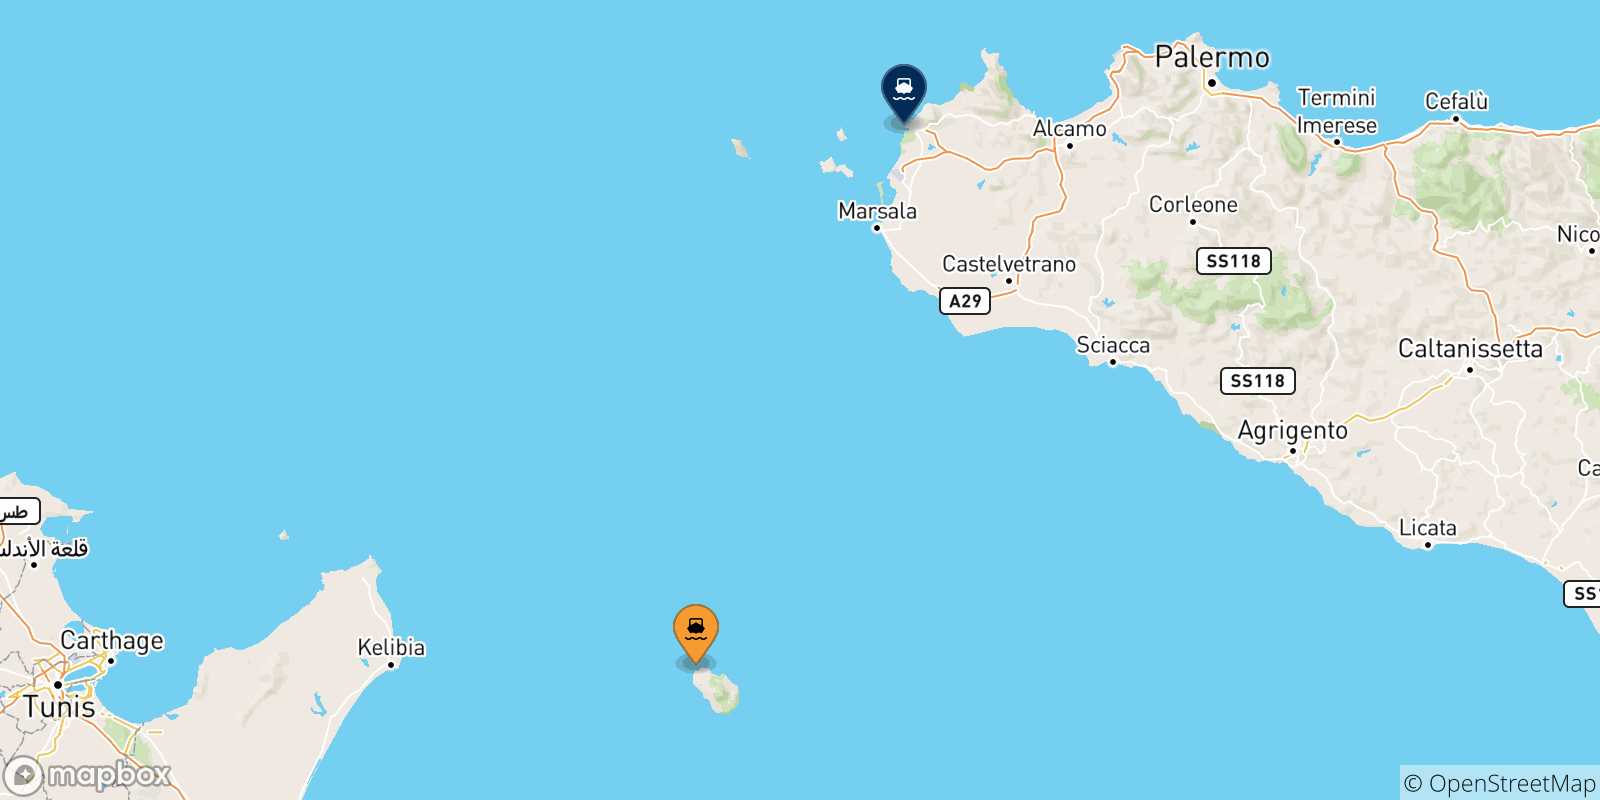 Mappa delle possibili rotte tra Pantelleria e la Sicilia